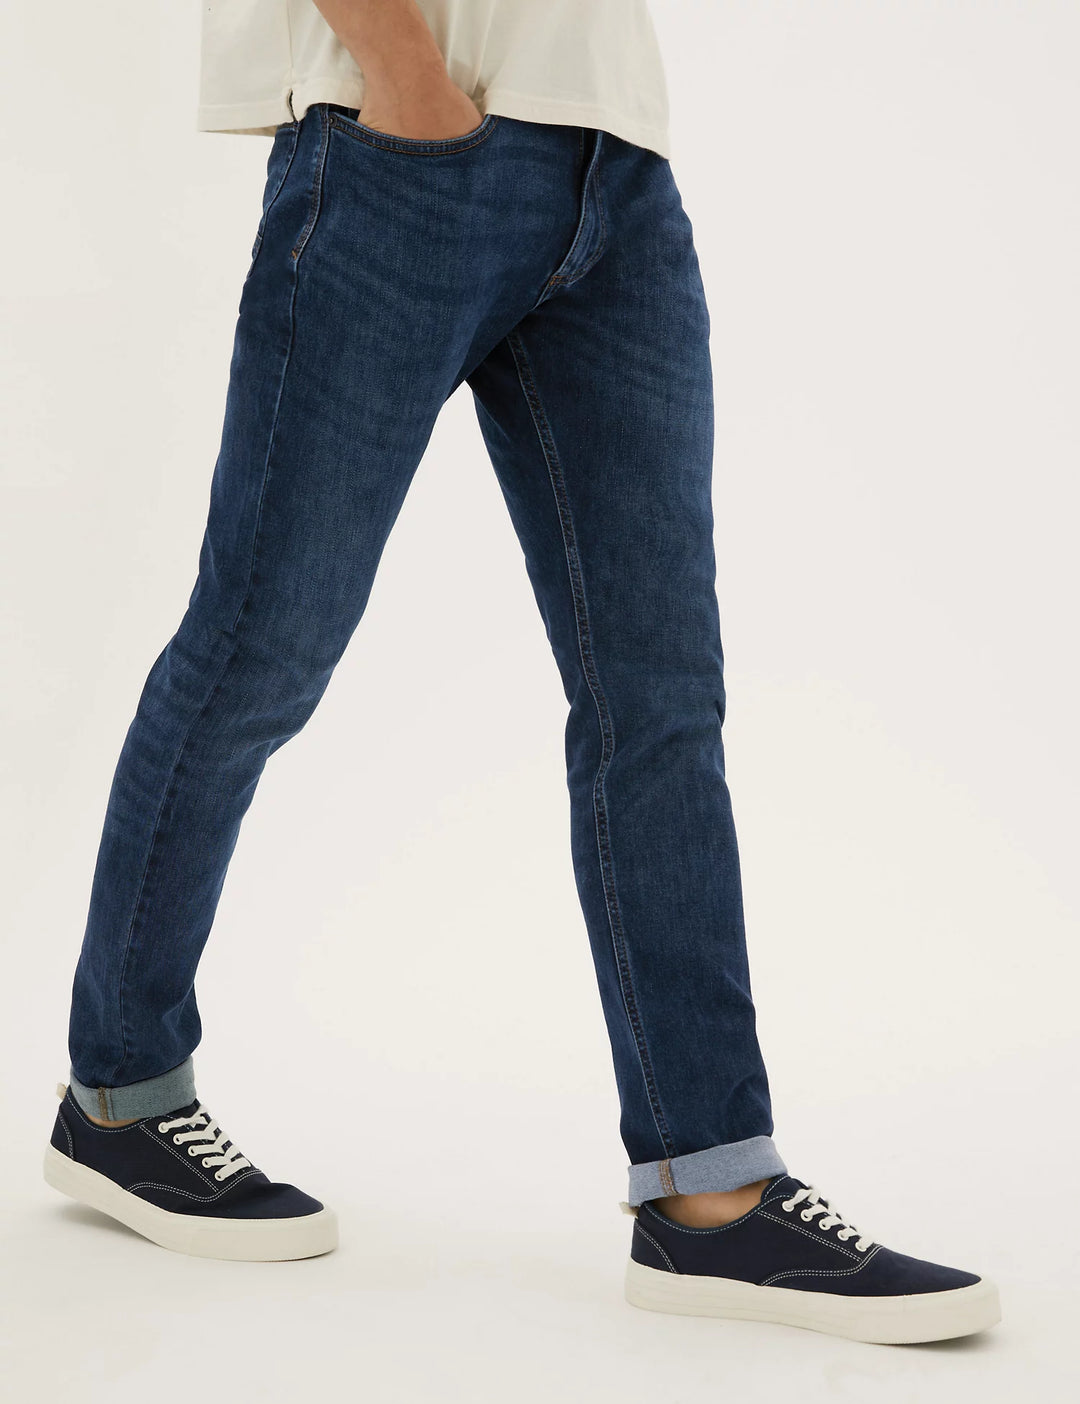 M&S Mens Jeans T17/1389